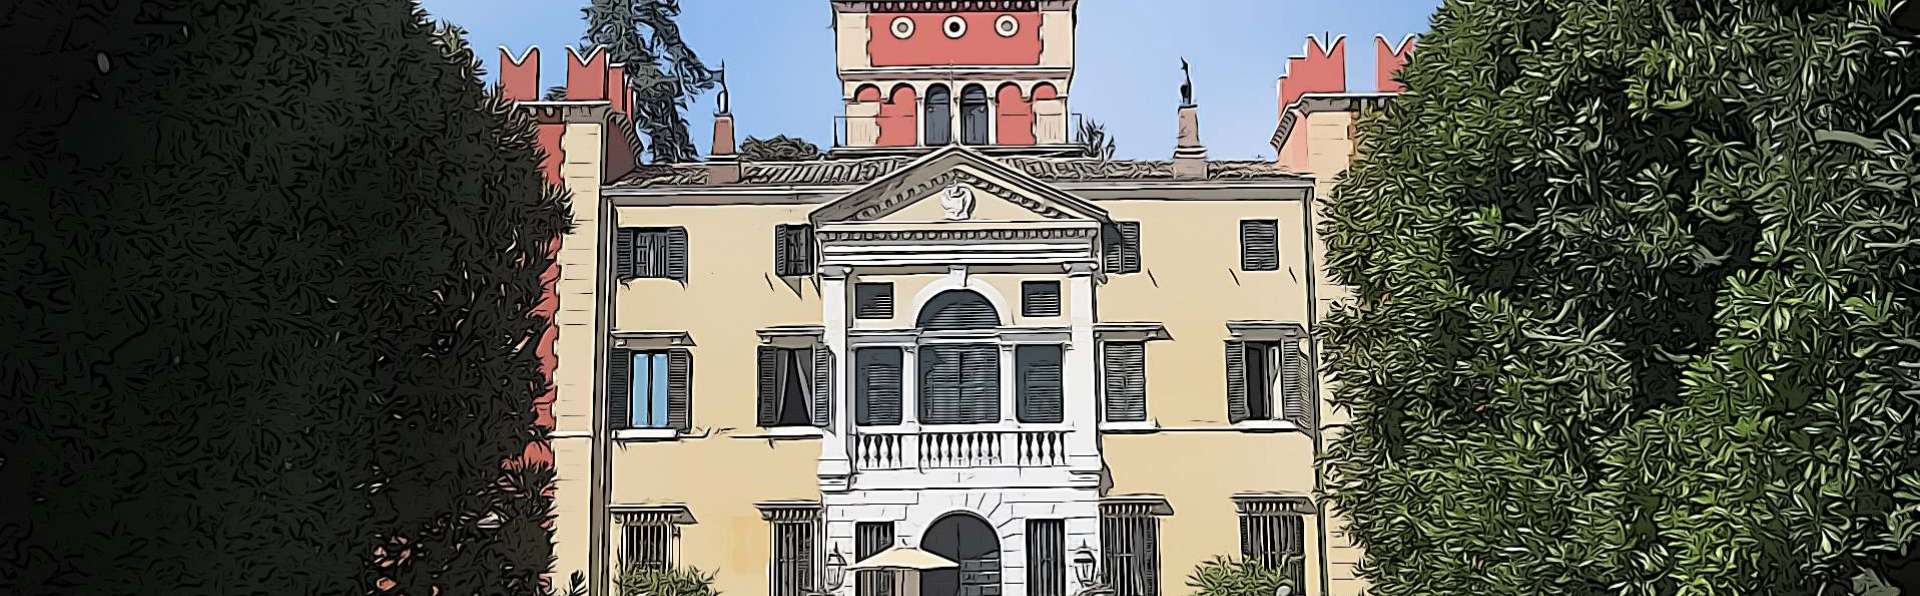 Garda | Villa Albertini e Villa Carlotti Canossa